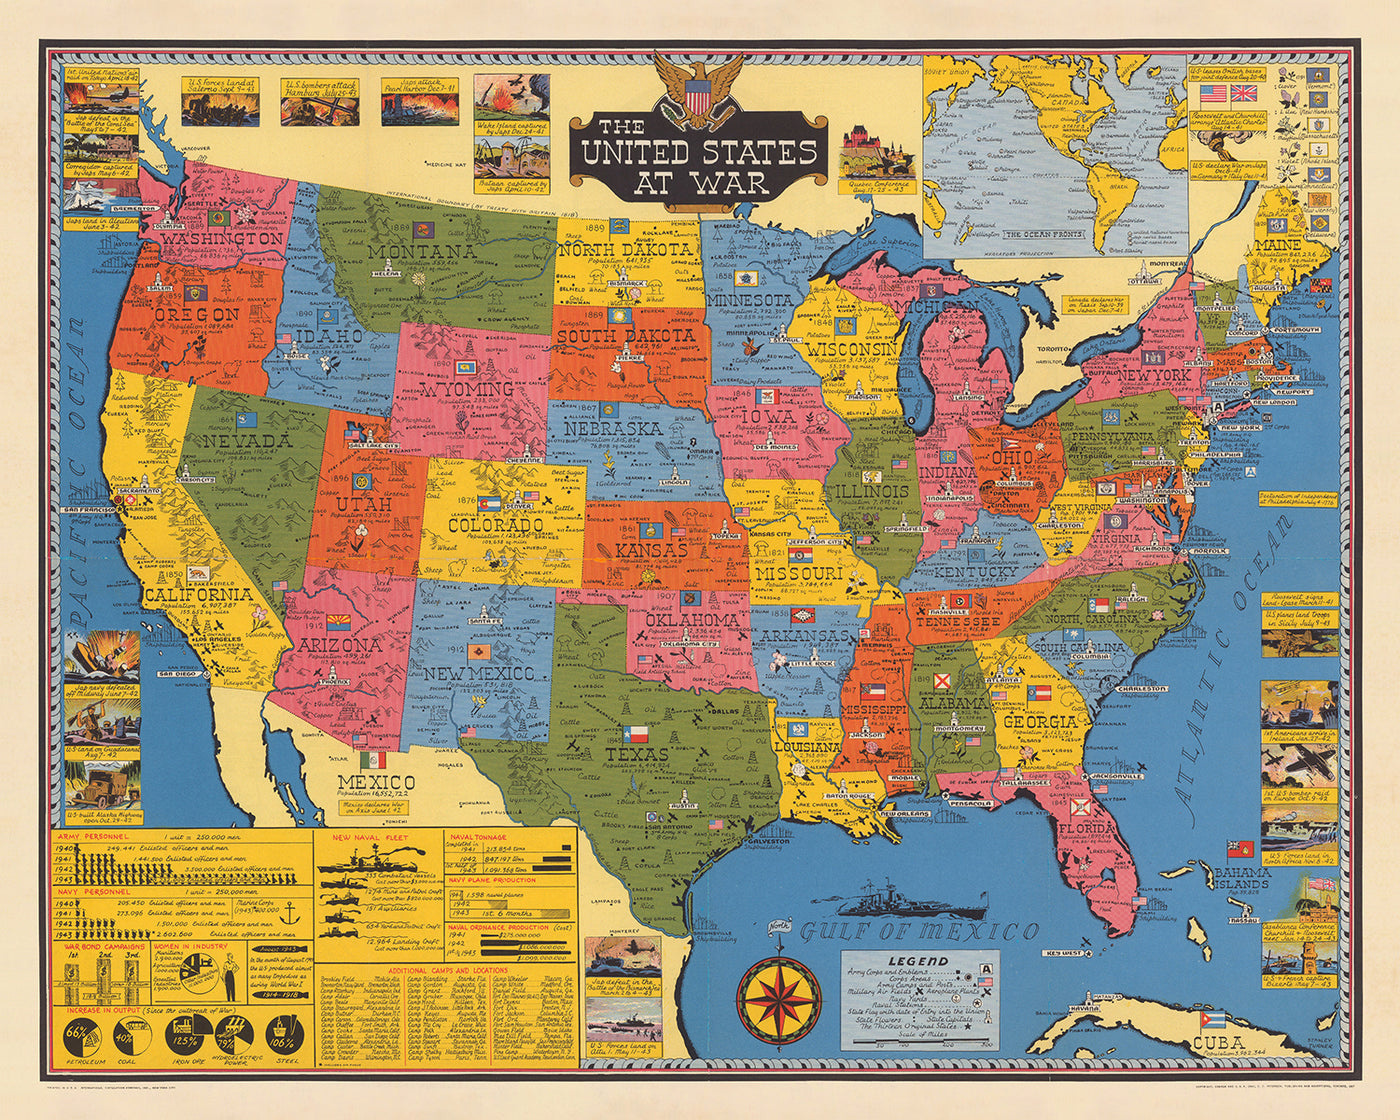 Ancienne carte des États-Unis en guerre par Stanley Turner, 1943 : tableau de l'armée et de la marine de la Seconde Guerre mondiale